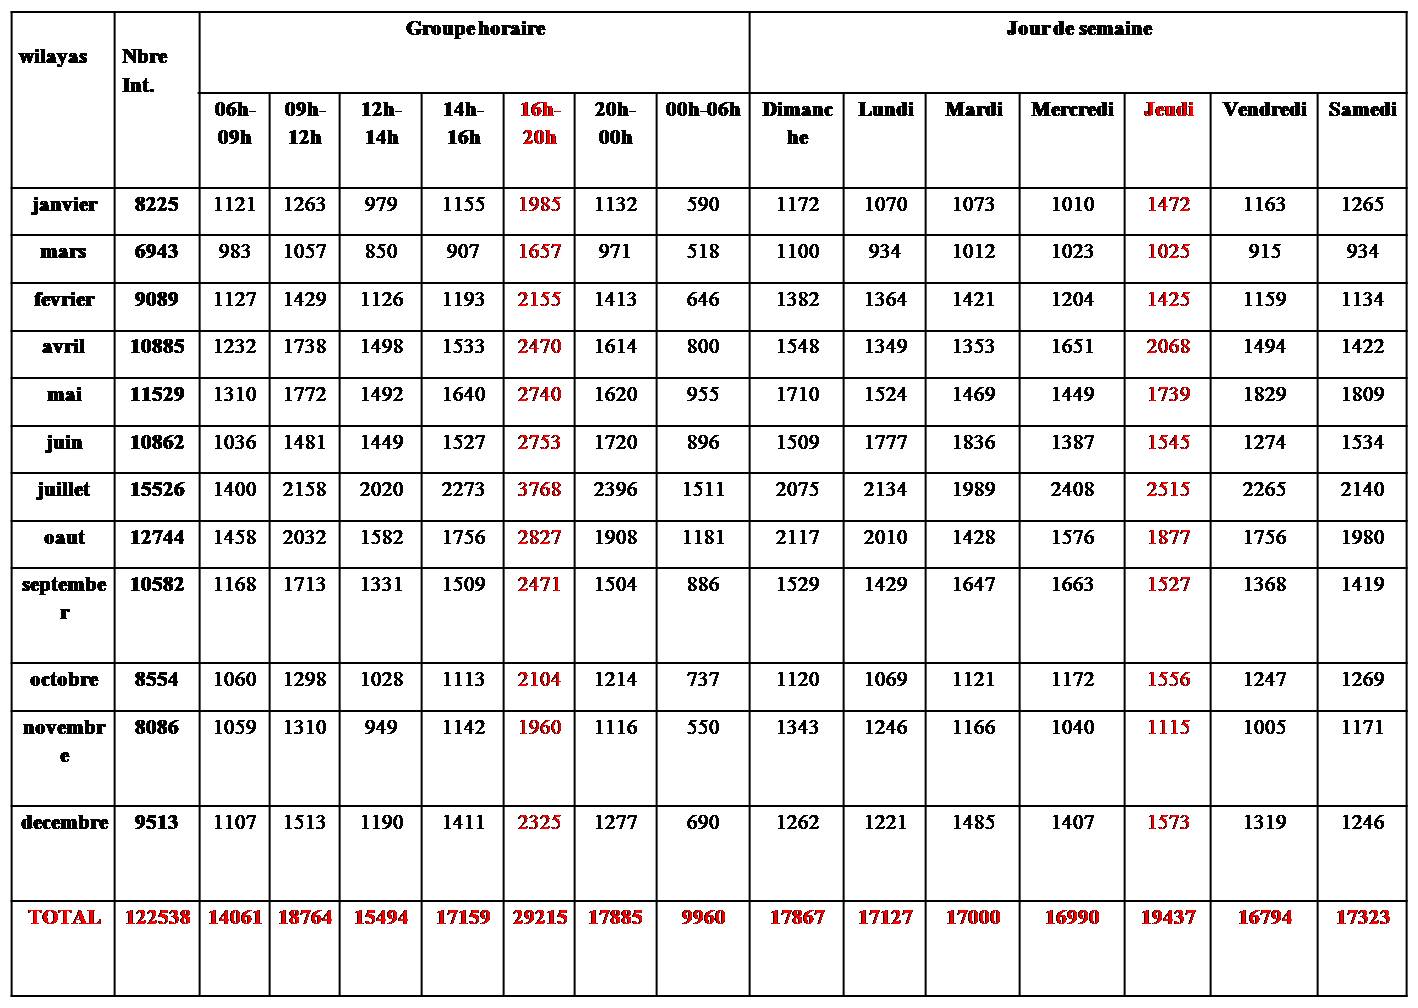 « Tableau de classification des accidents de la circulation selon groupe horaire et jour de semaine 2015 »